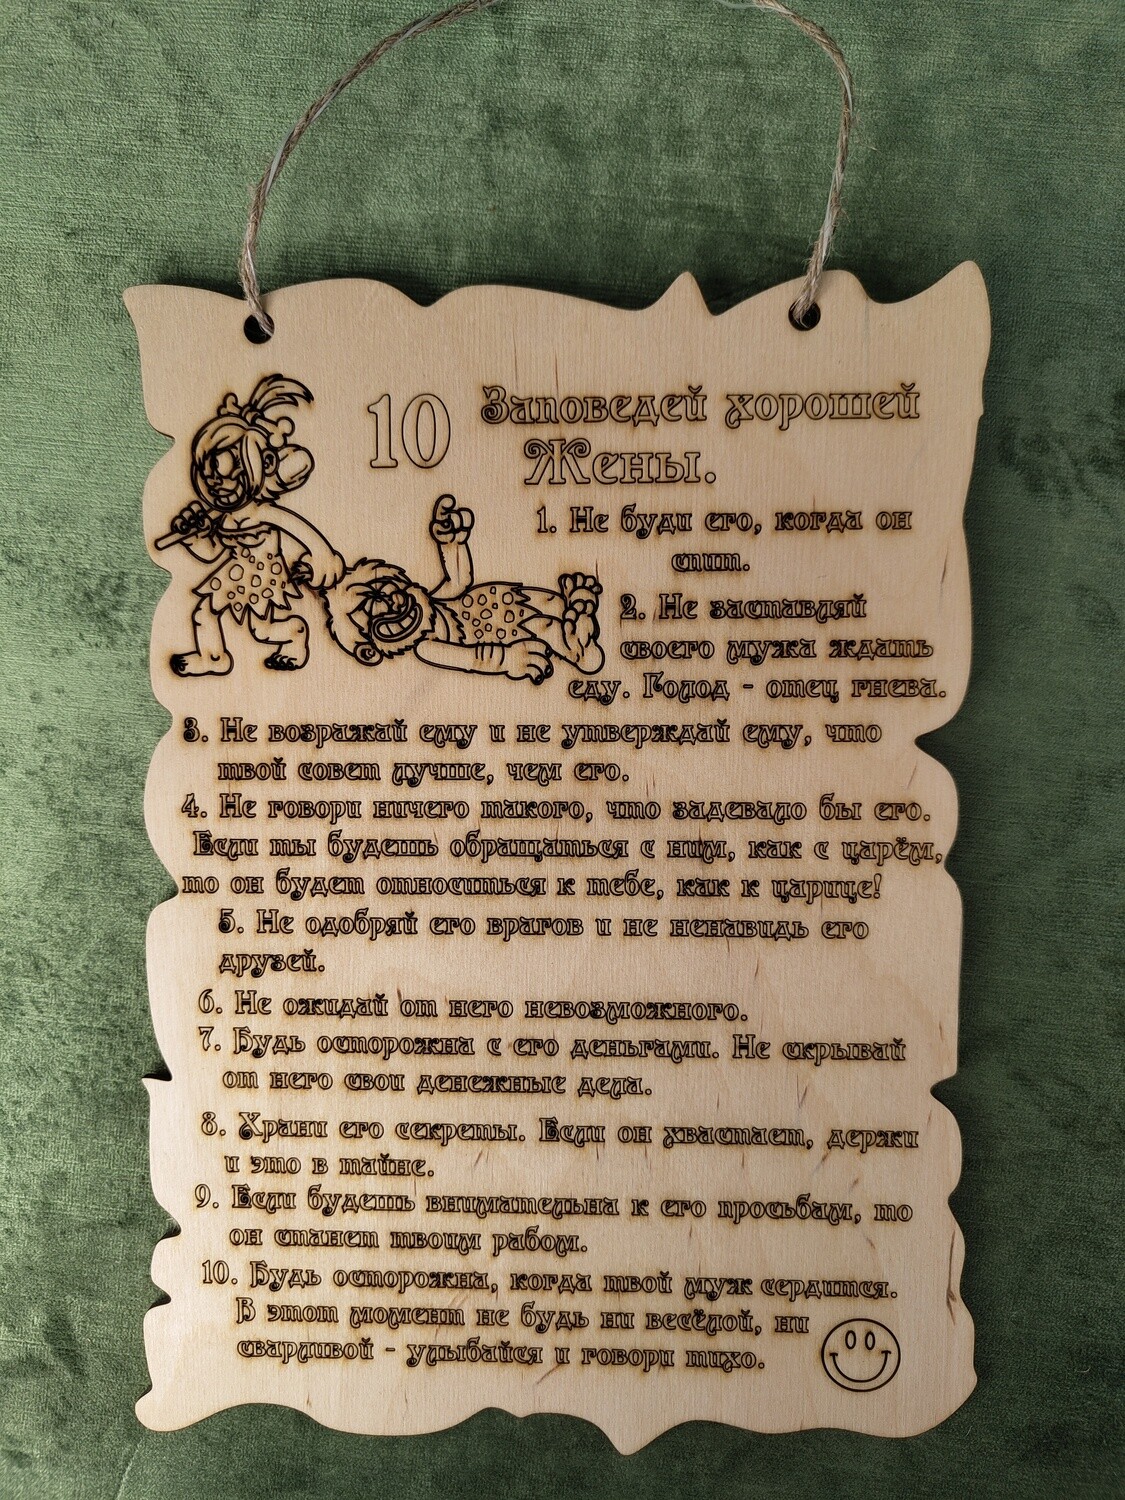 Plāksne ar uzrakstu "10 заповедей хорошей жены"